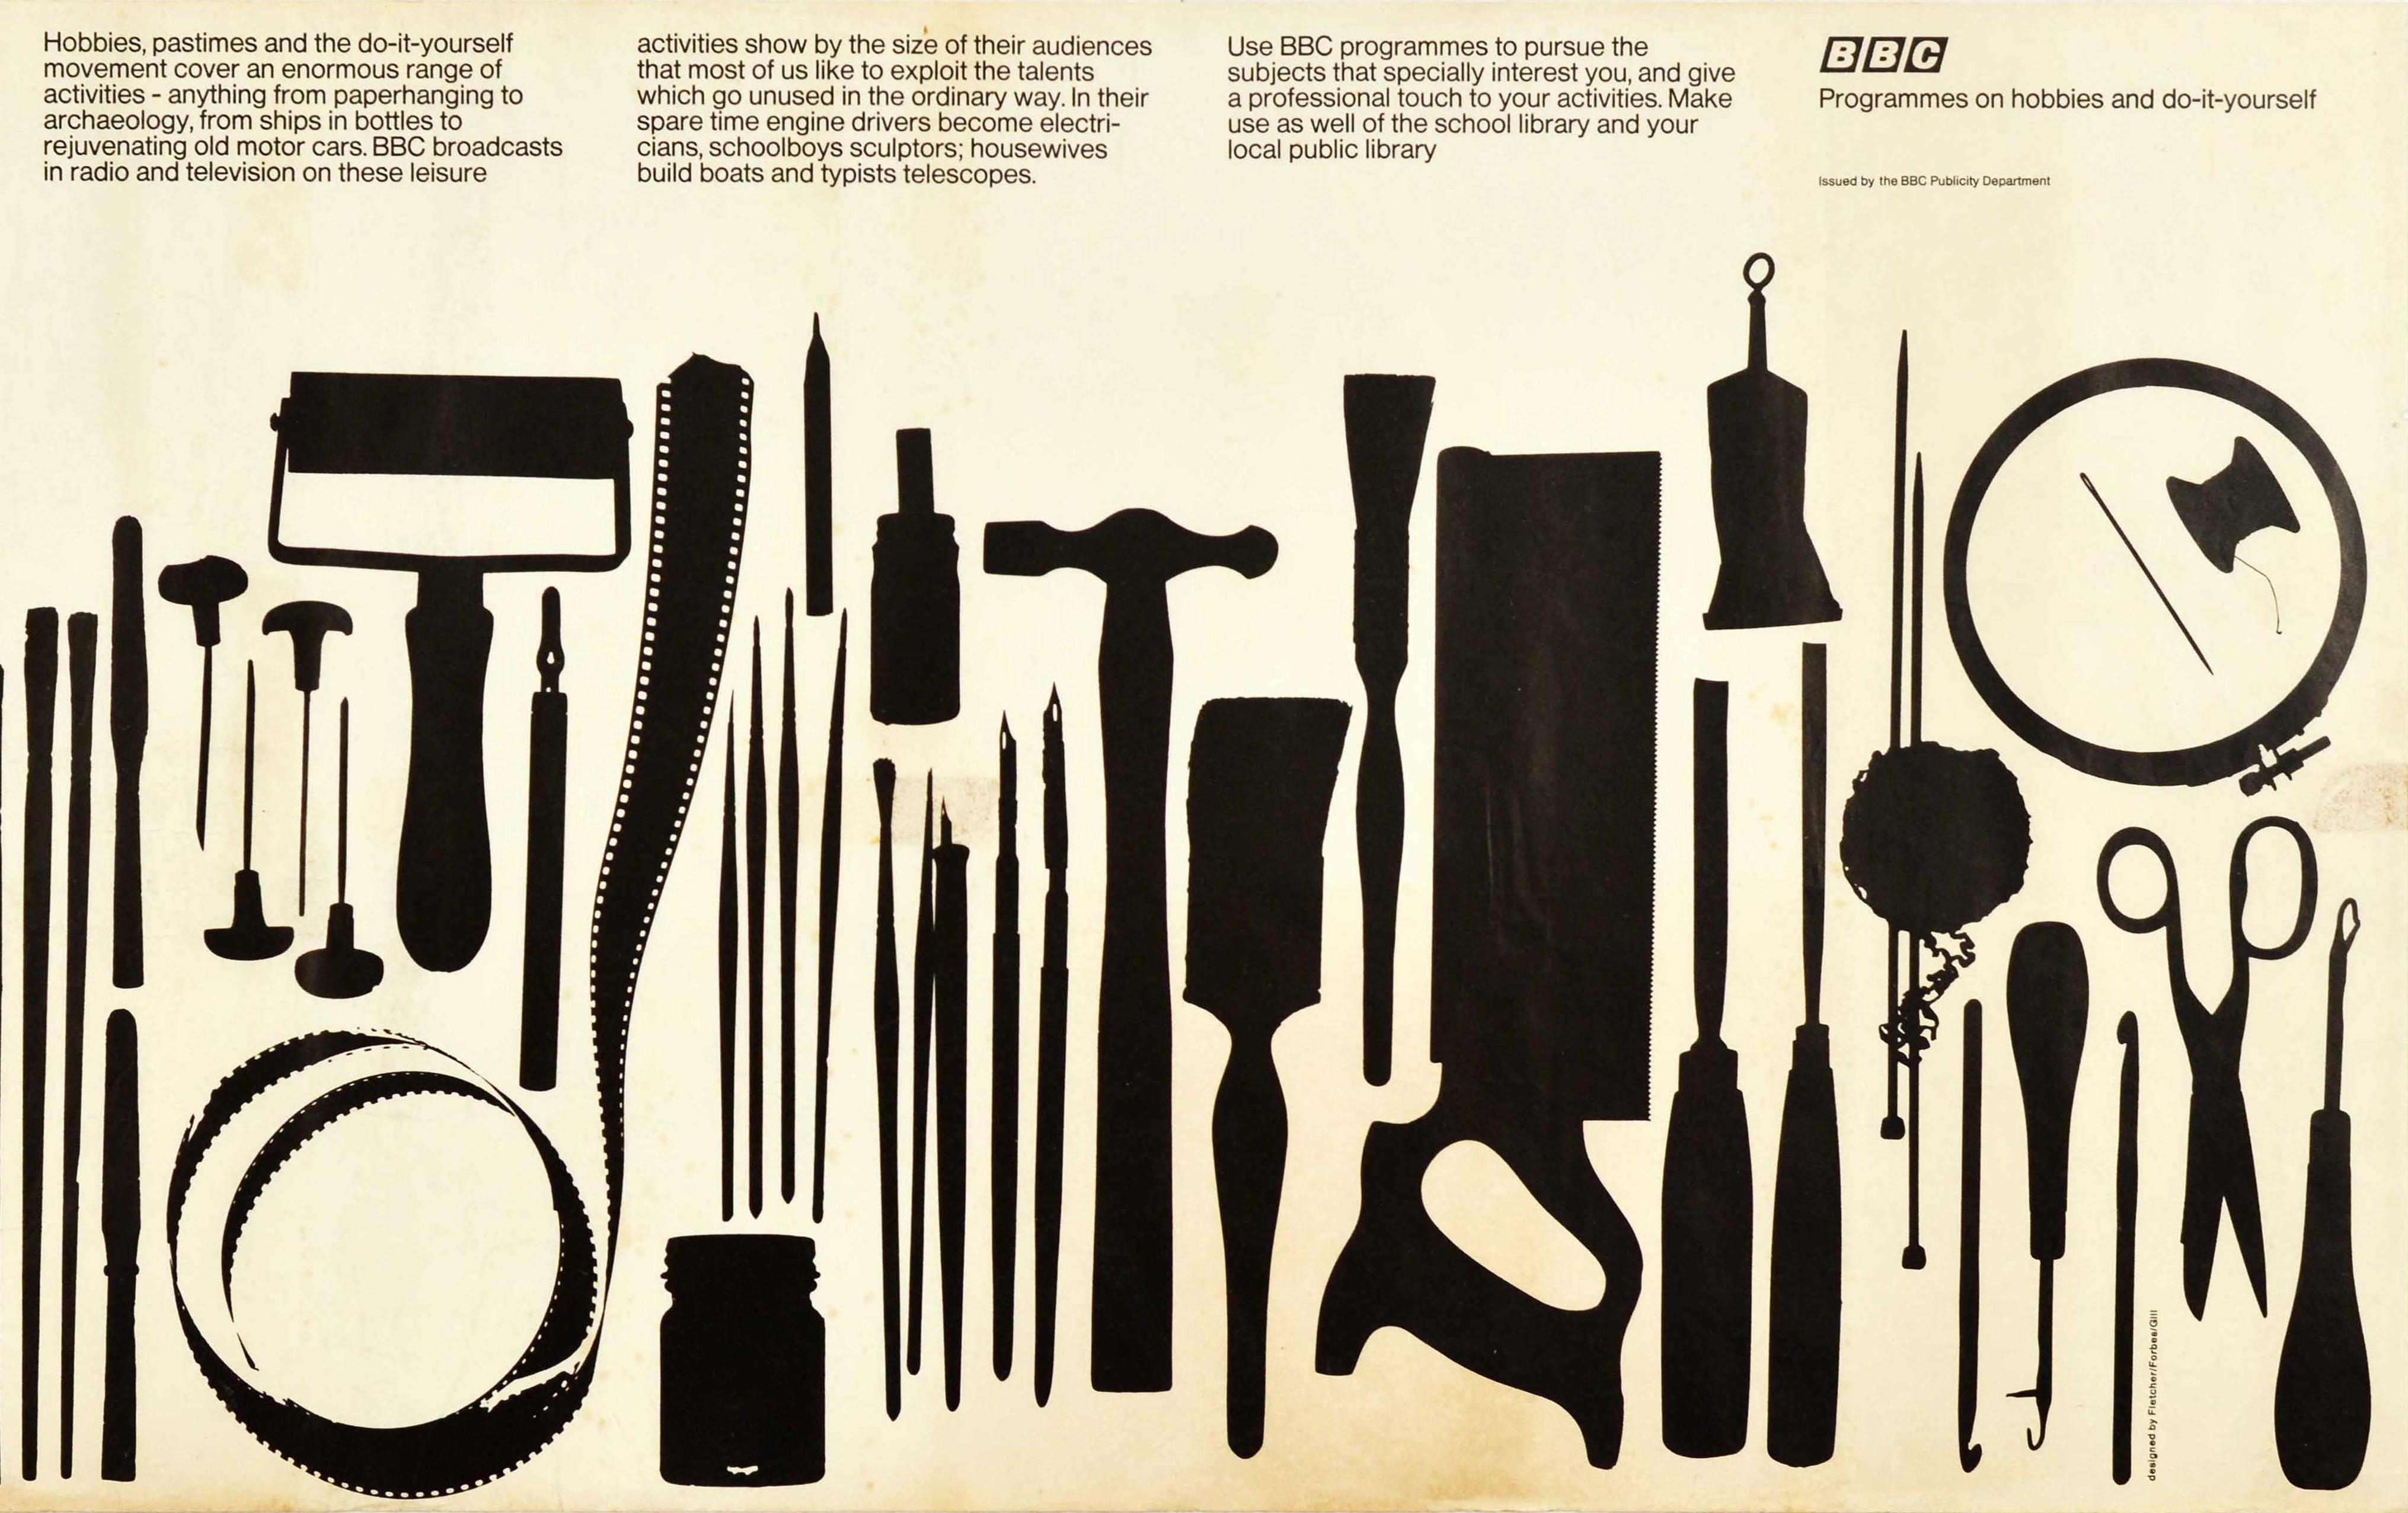 Original-Vintage-Poster BBC Programmes On Hobbies DIY Radio TV, Kunsthandwerkliches Design (Weiß), Print, von Fletcher, Forbes, Gill